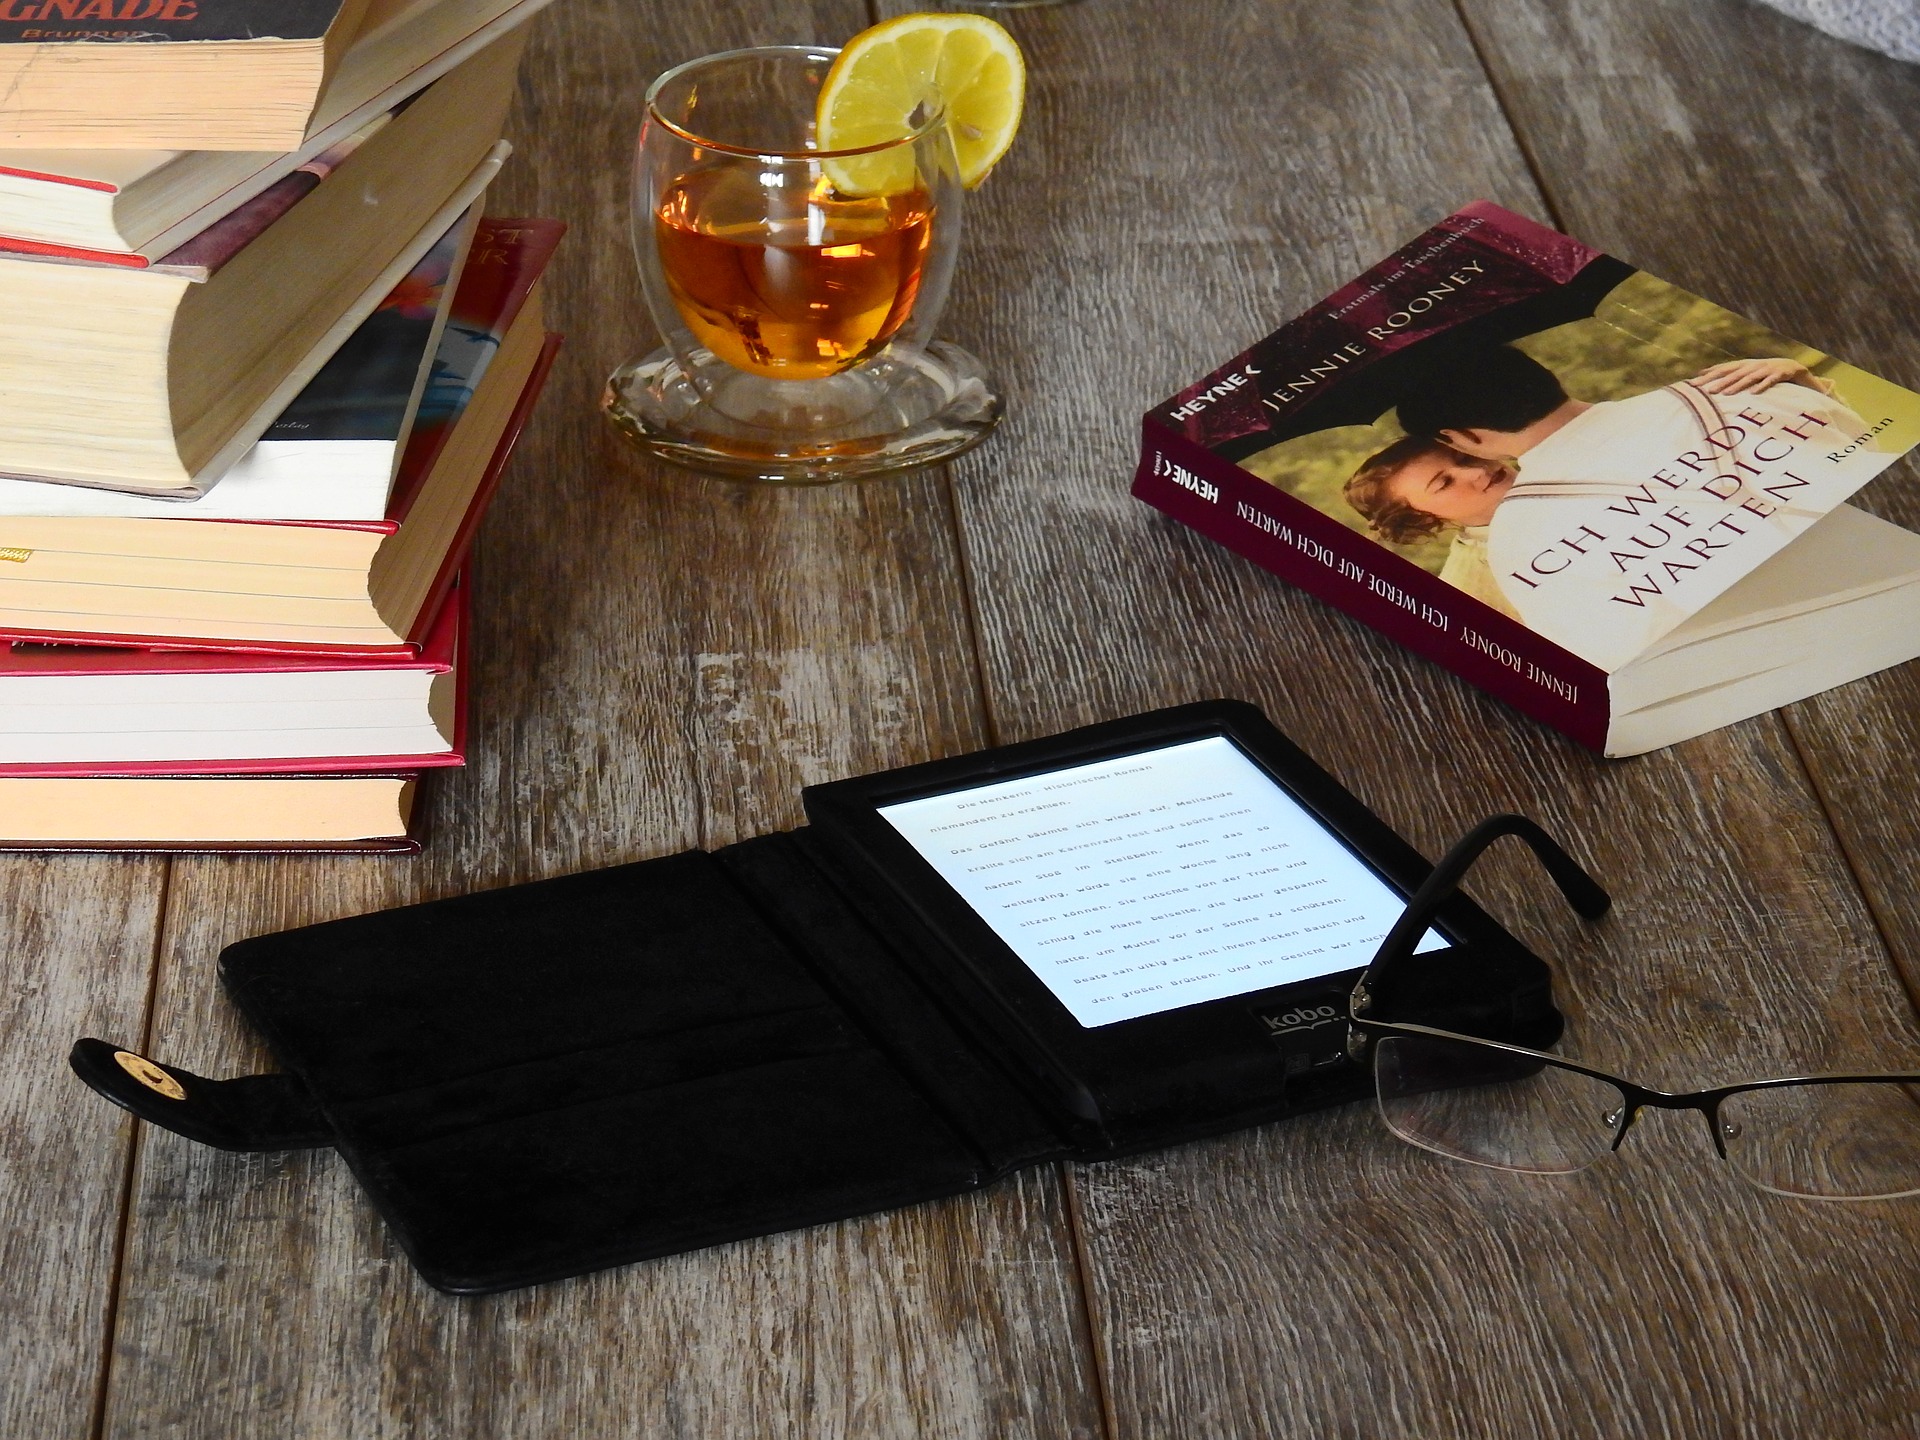 Ebook Reader und Bücher auf einem Tisch. Quelle: Pixabay